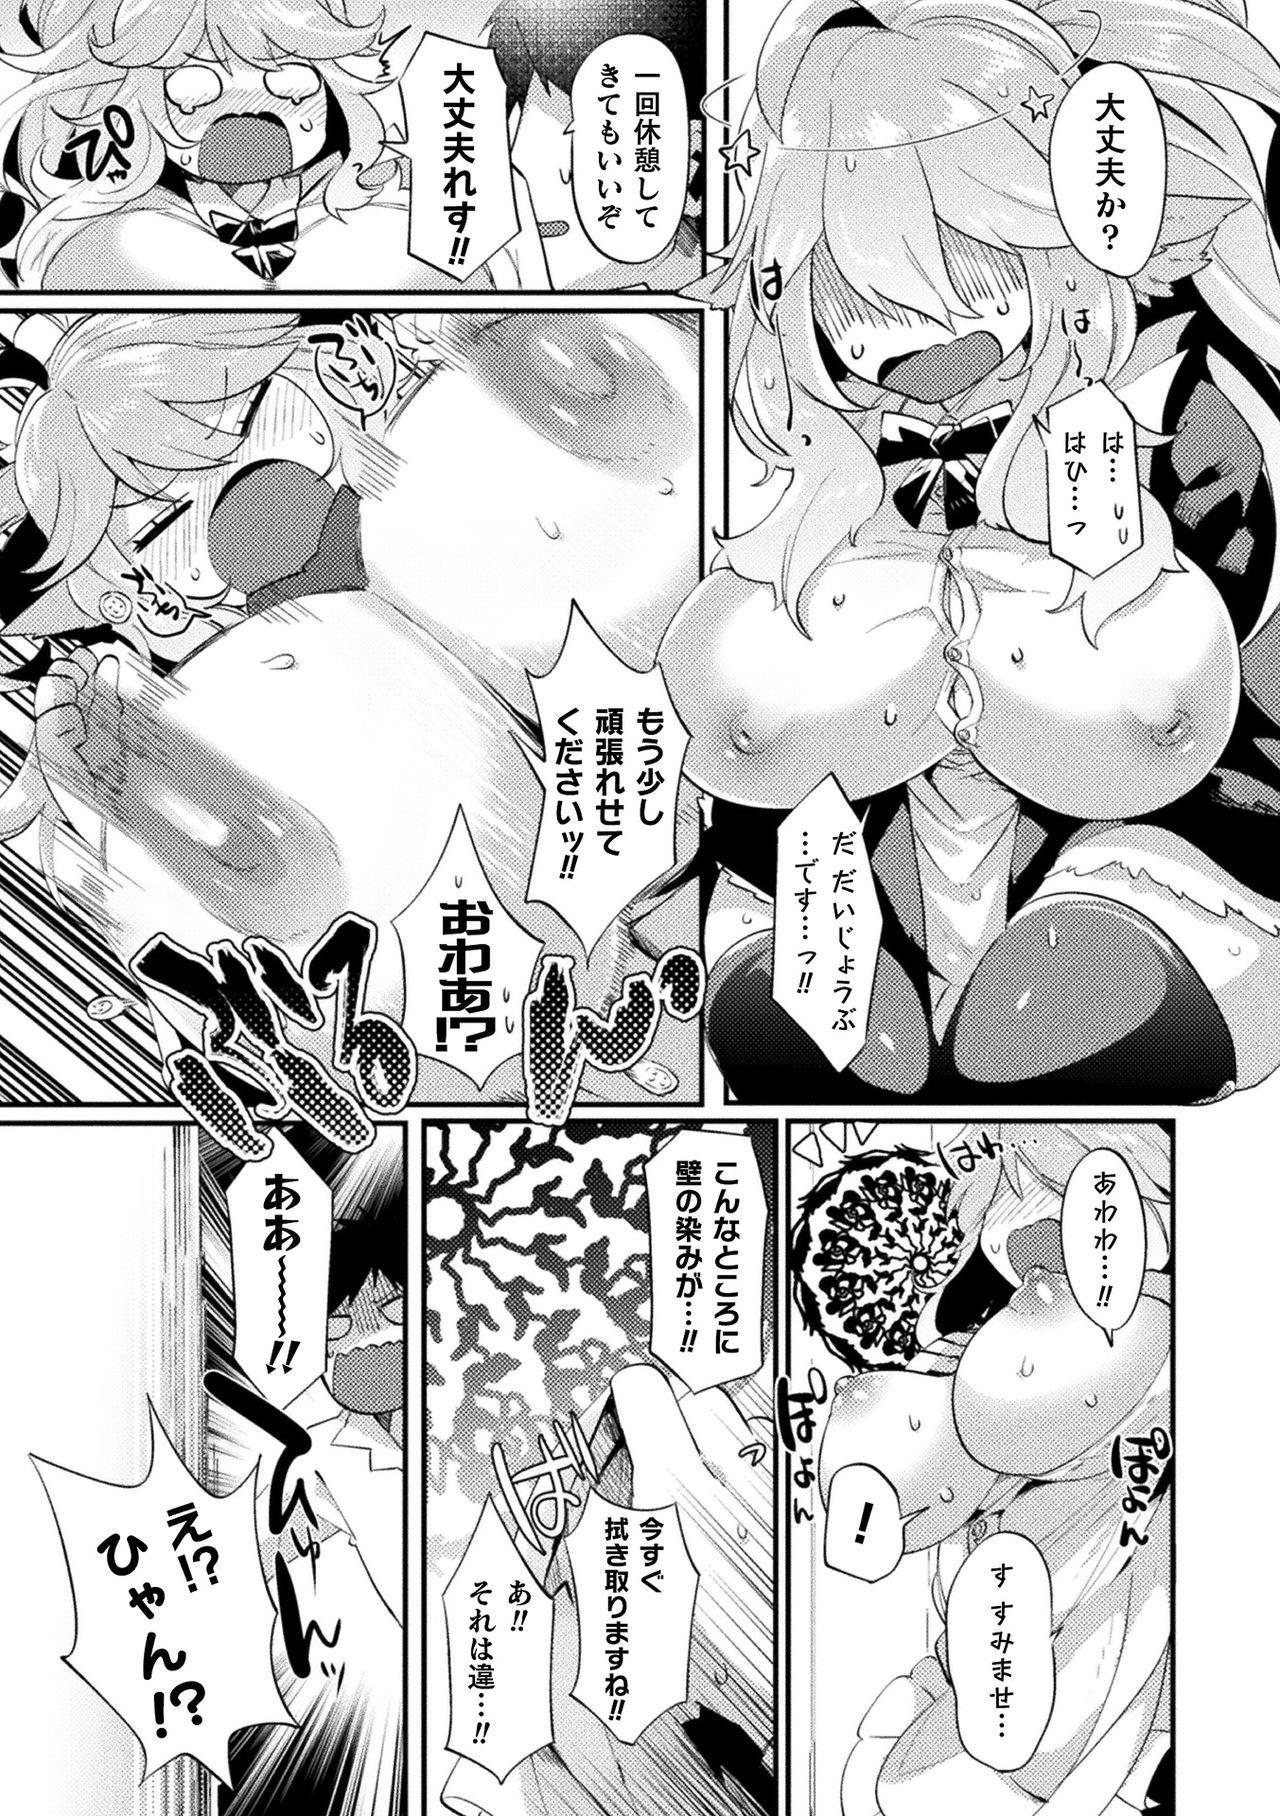 [Anthology] Bessatsu Comic Unreal Ponkotsu Fantasy Heroine H ~Doji o Funde Gyakuten Saretari Ero Trap ni Hamattari!?~ Vol. 1 [Digital] 9